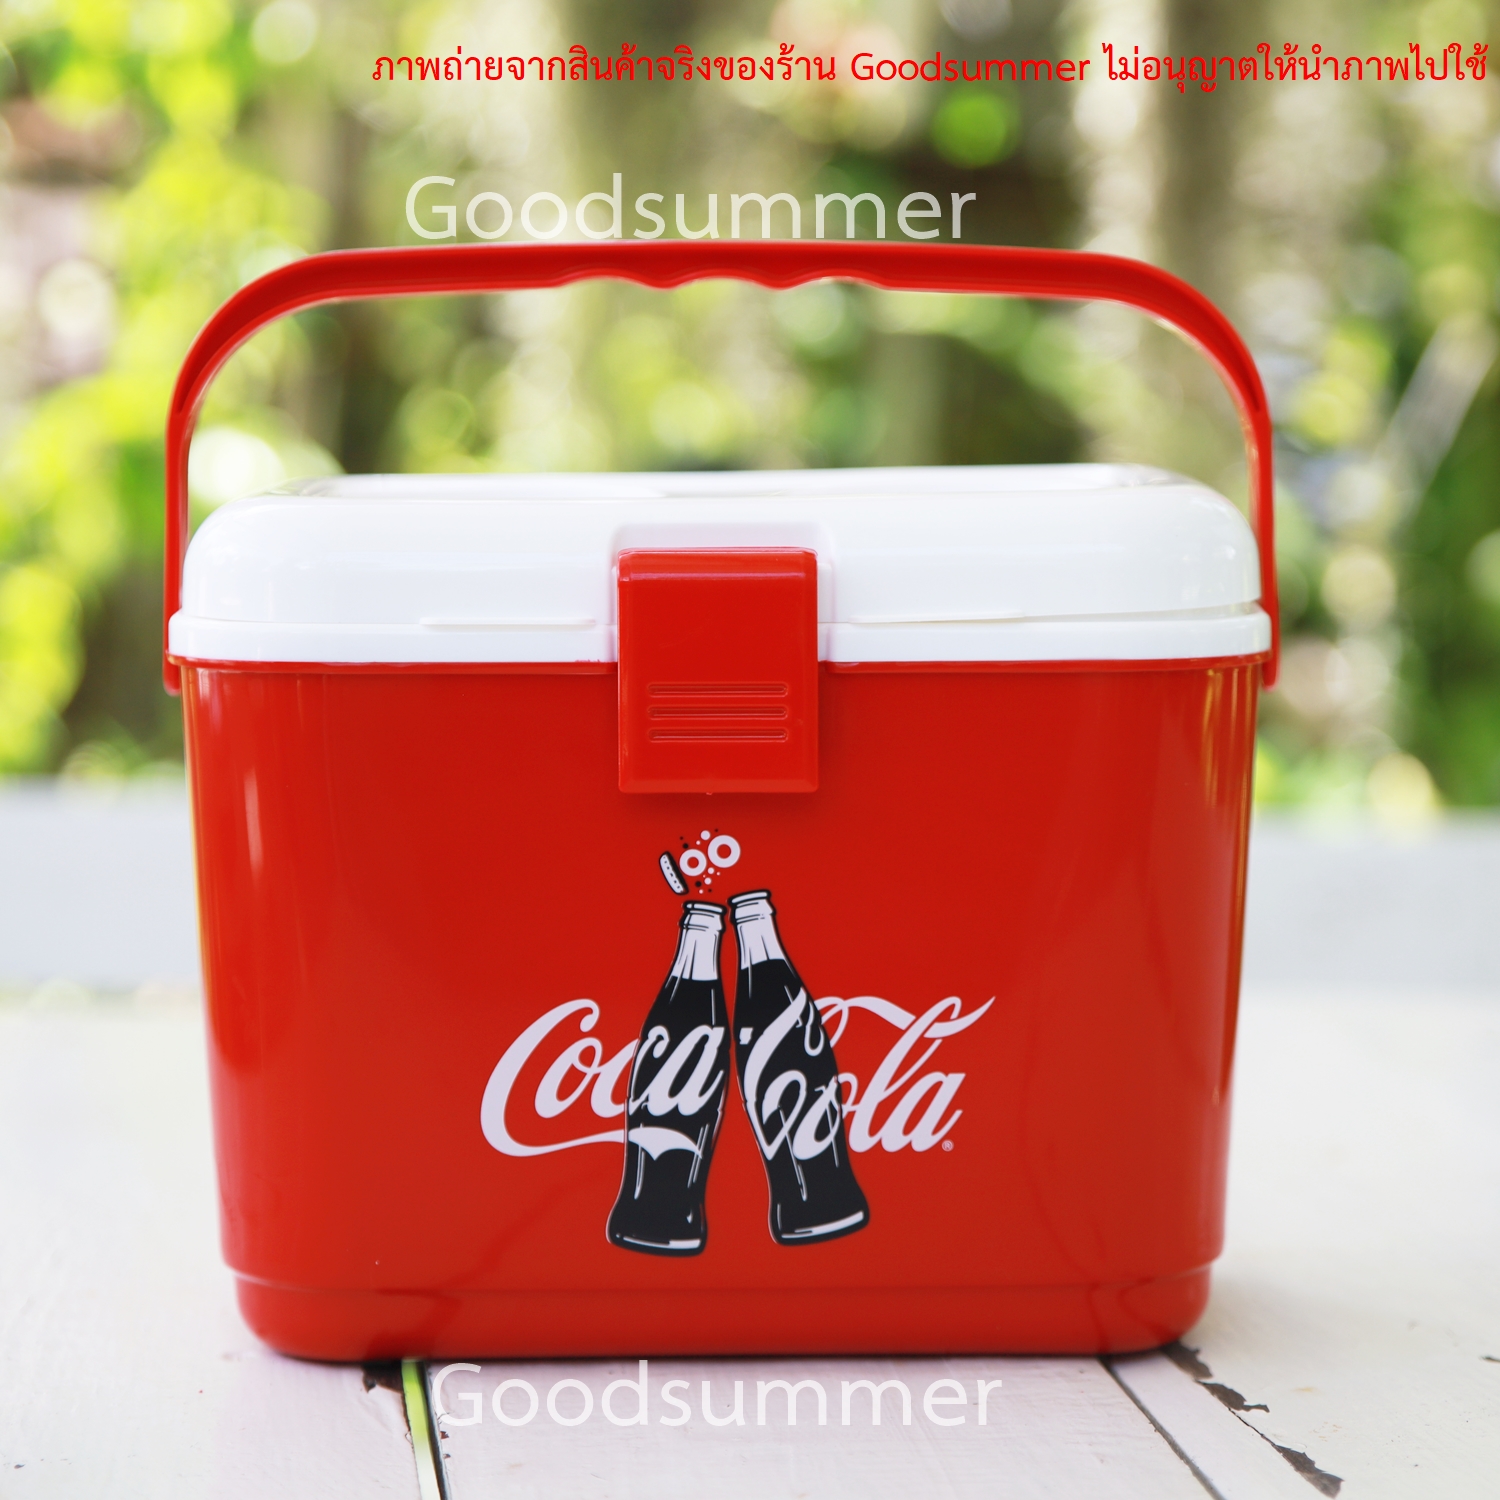 กระติกน้ำ กระติกโค้ก Coke  ขนาด 4 ลิตร มีที่วางแก้ว มีหูหิ้ว  กระติก กระติกน้ำเก็บความเย็น  กระติกน้ำเย็น พร้อมส่ง 2-3 วันได้รับของ